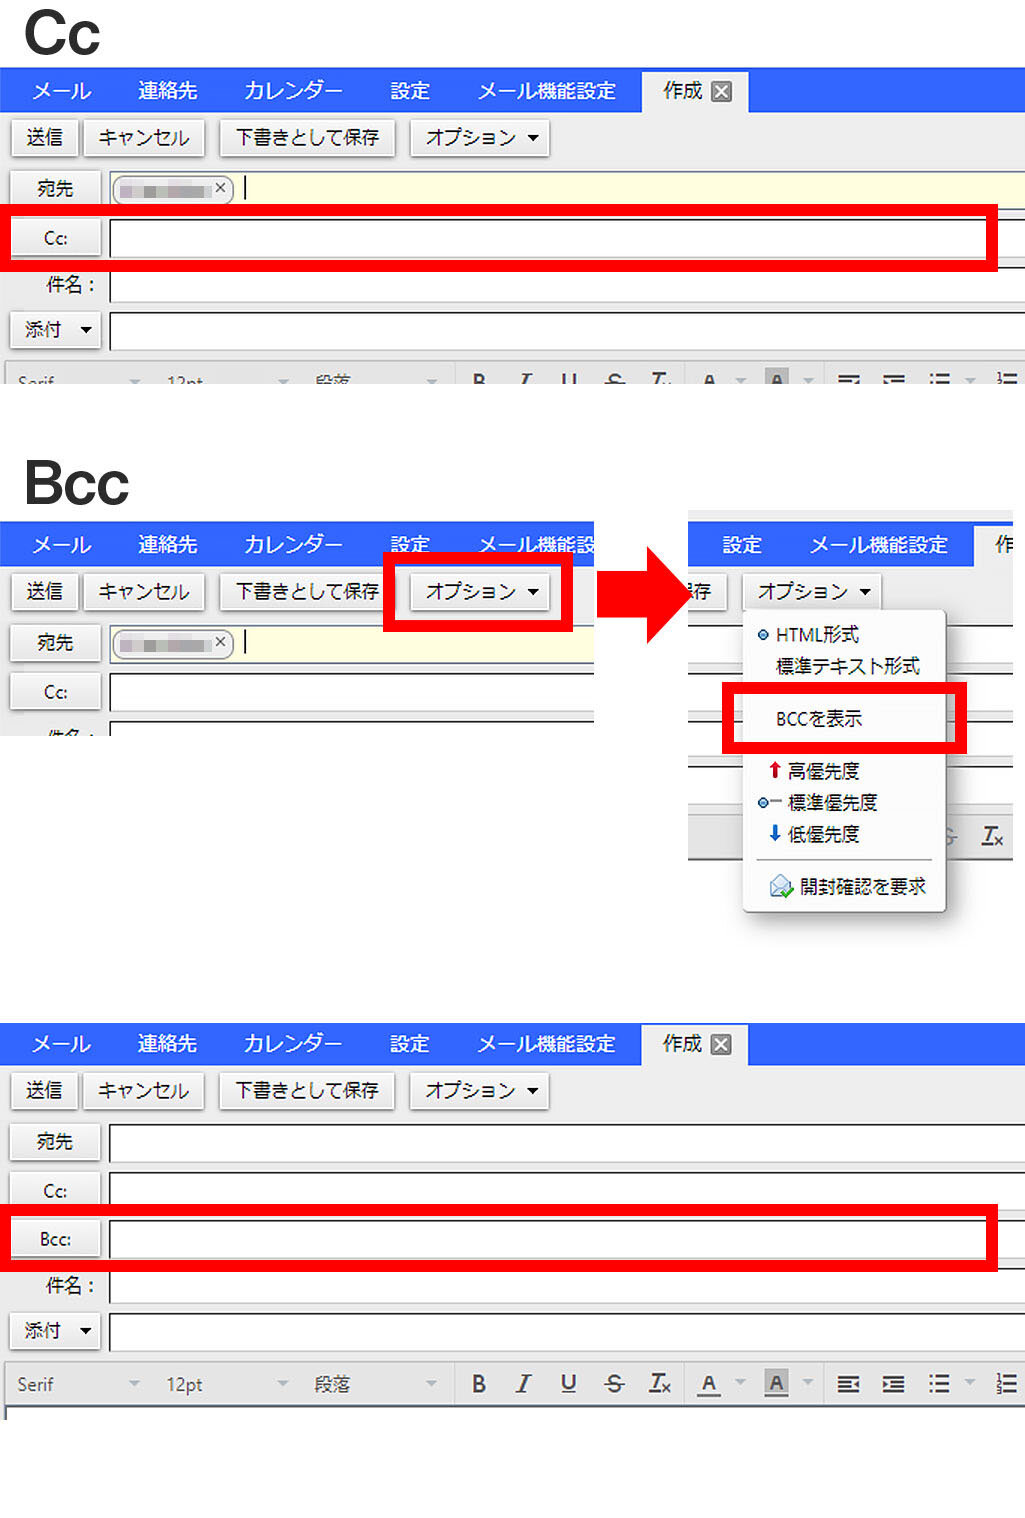 説明図：Cc、Bcc入力位置